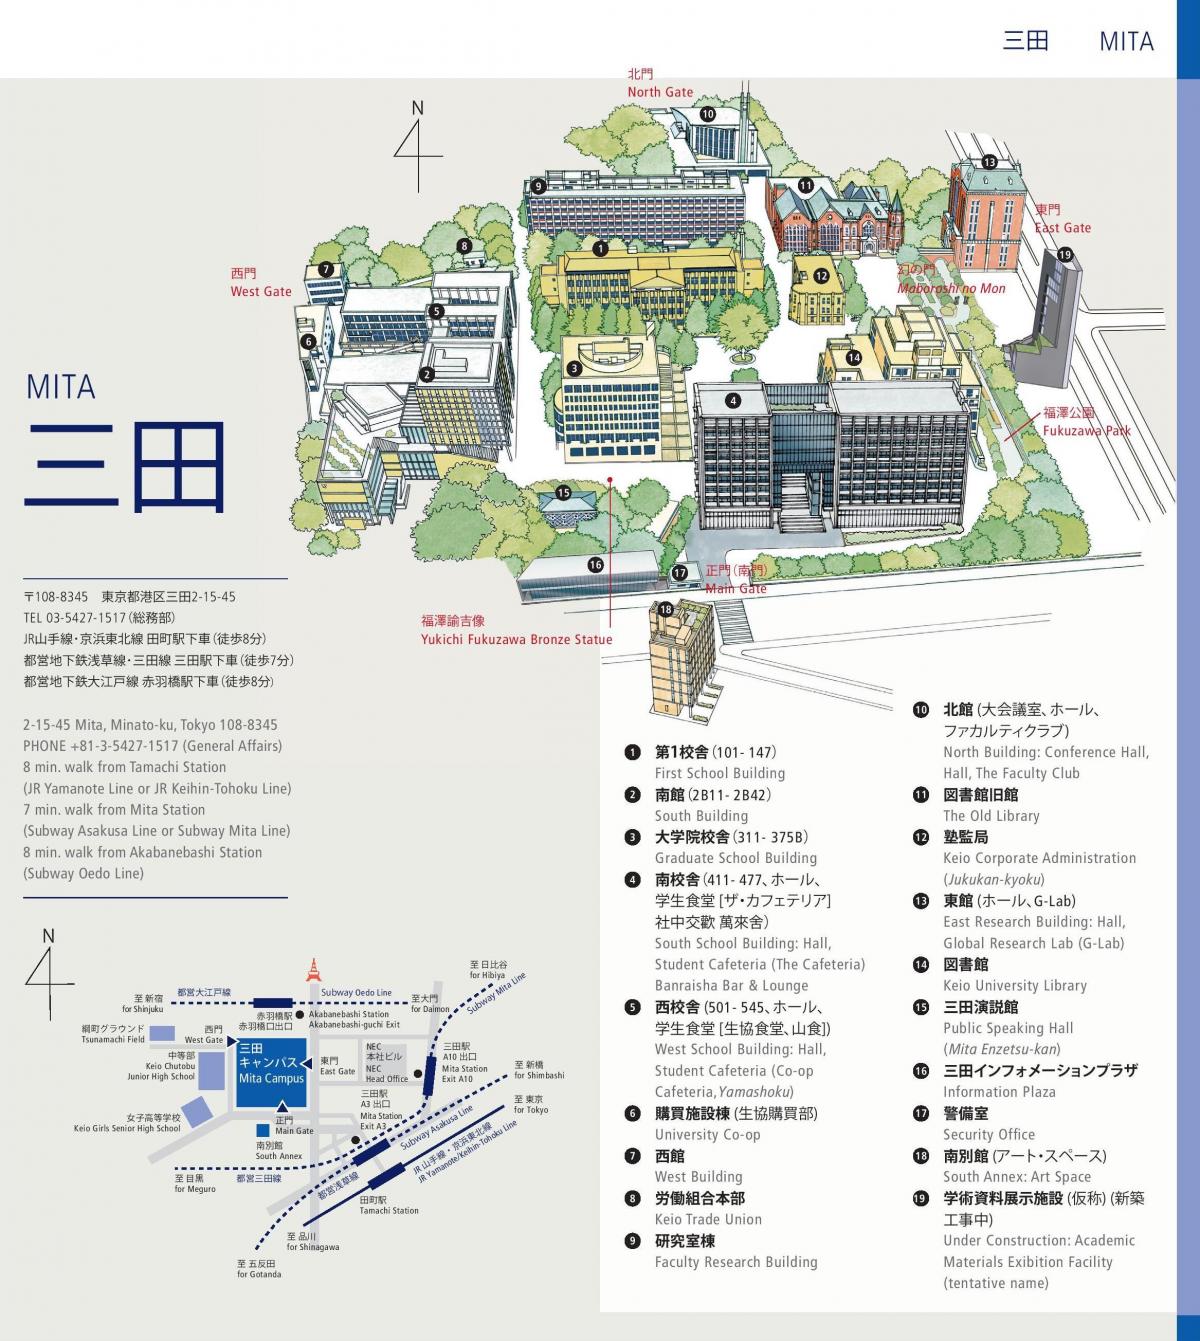 map of keio university